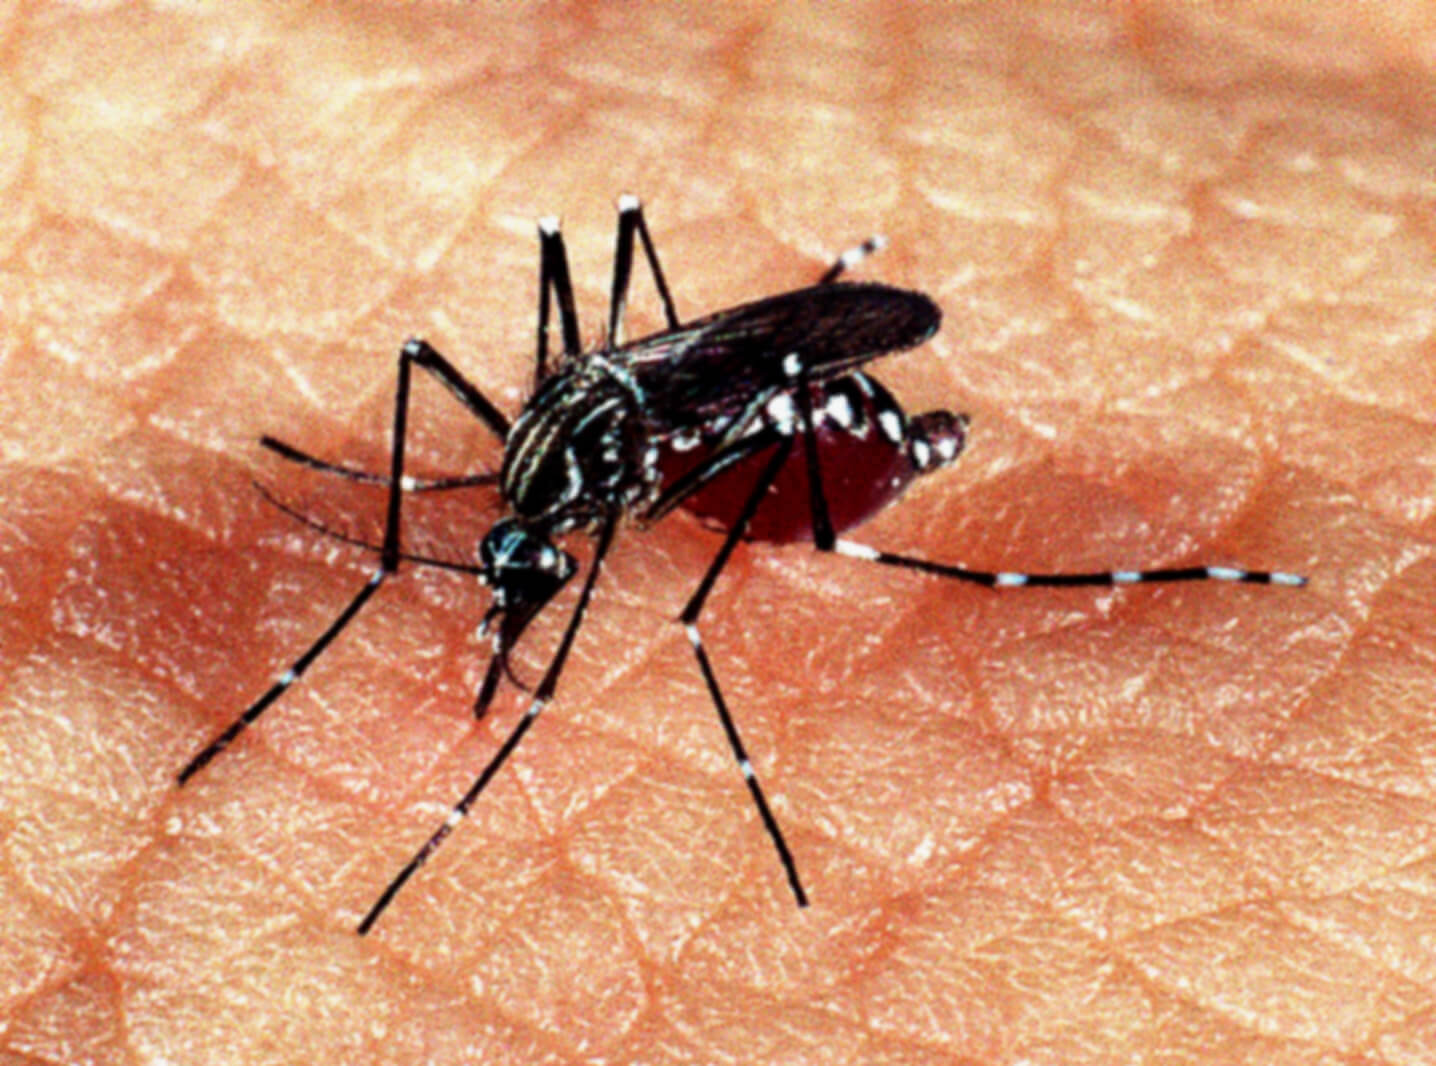 Foto aproximada do mosquito aedes aegypti sobre pele humana branca. Ele é preto e tem patas finas e longas com pontos brancos.